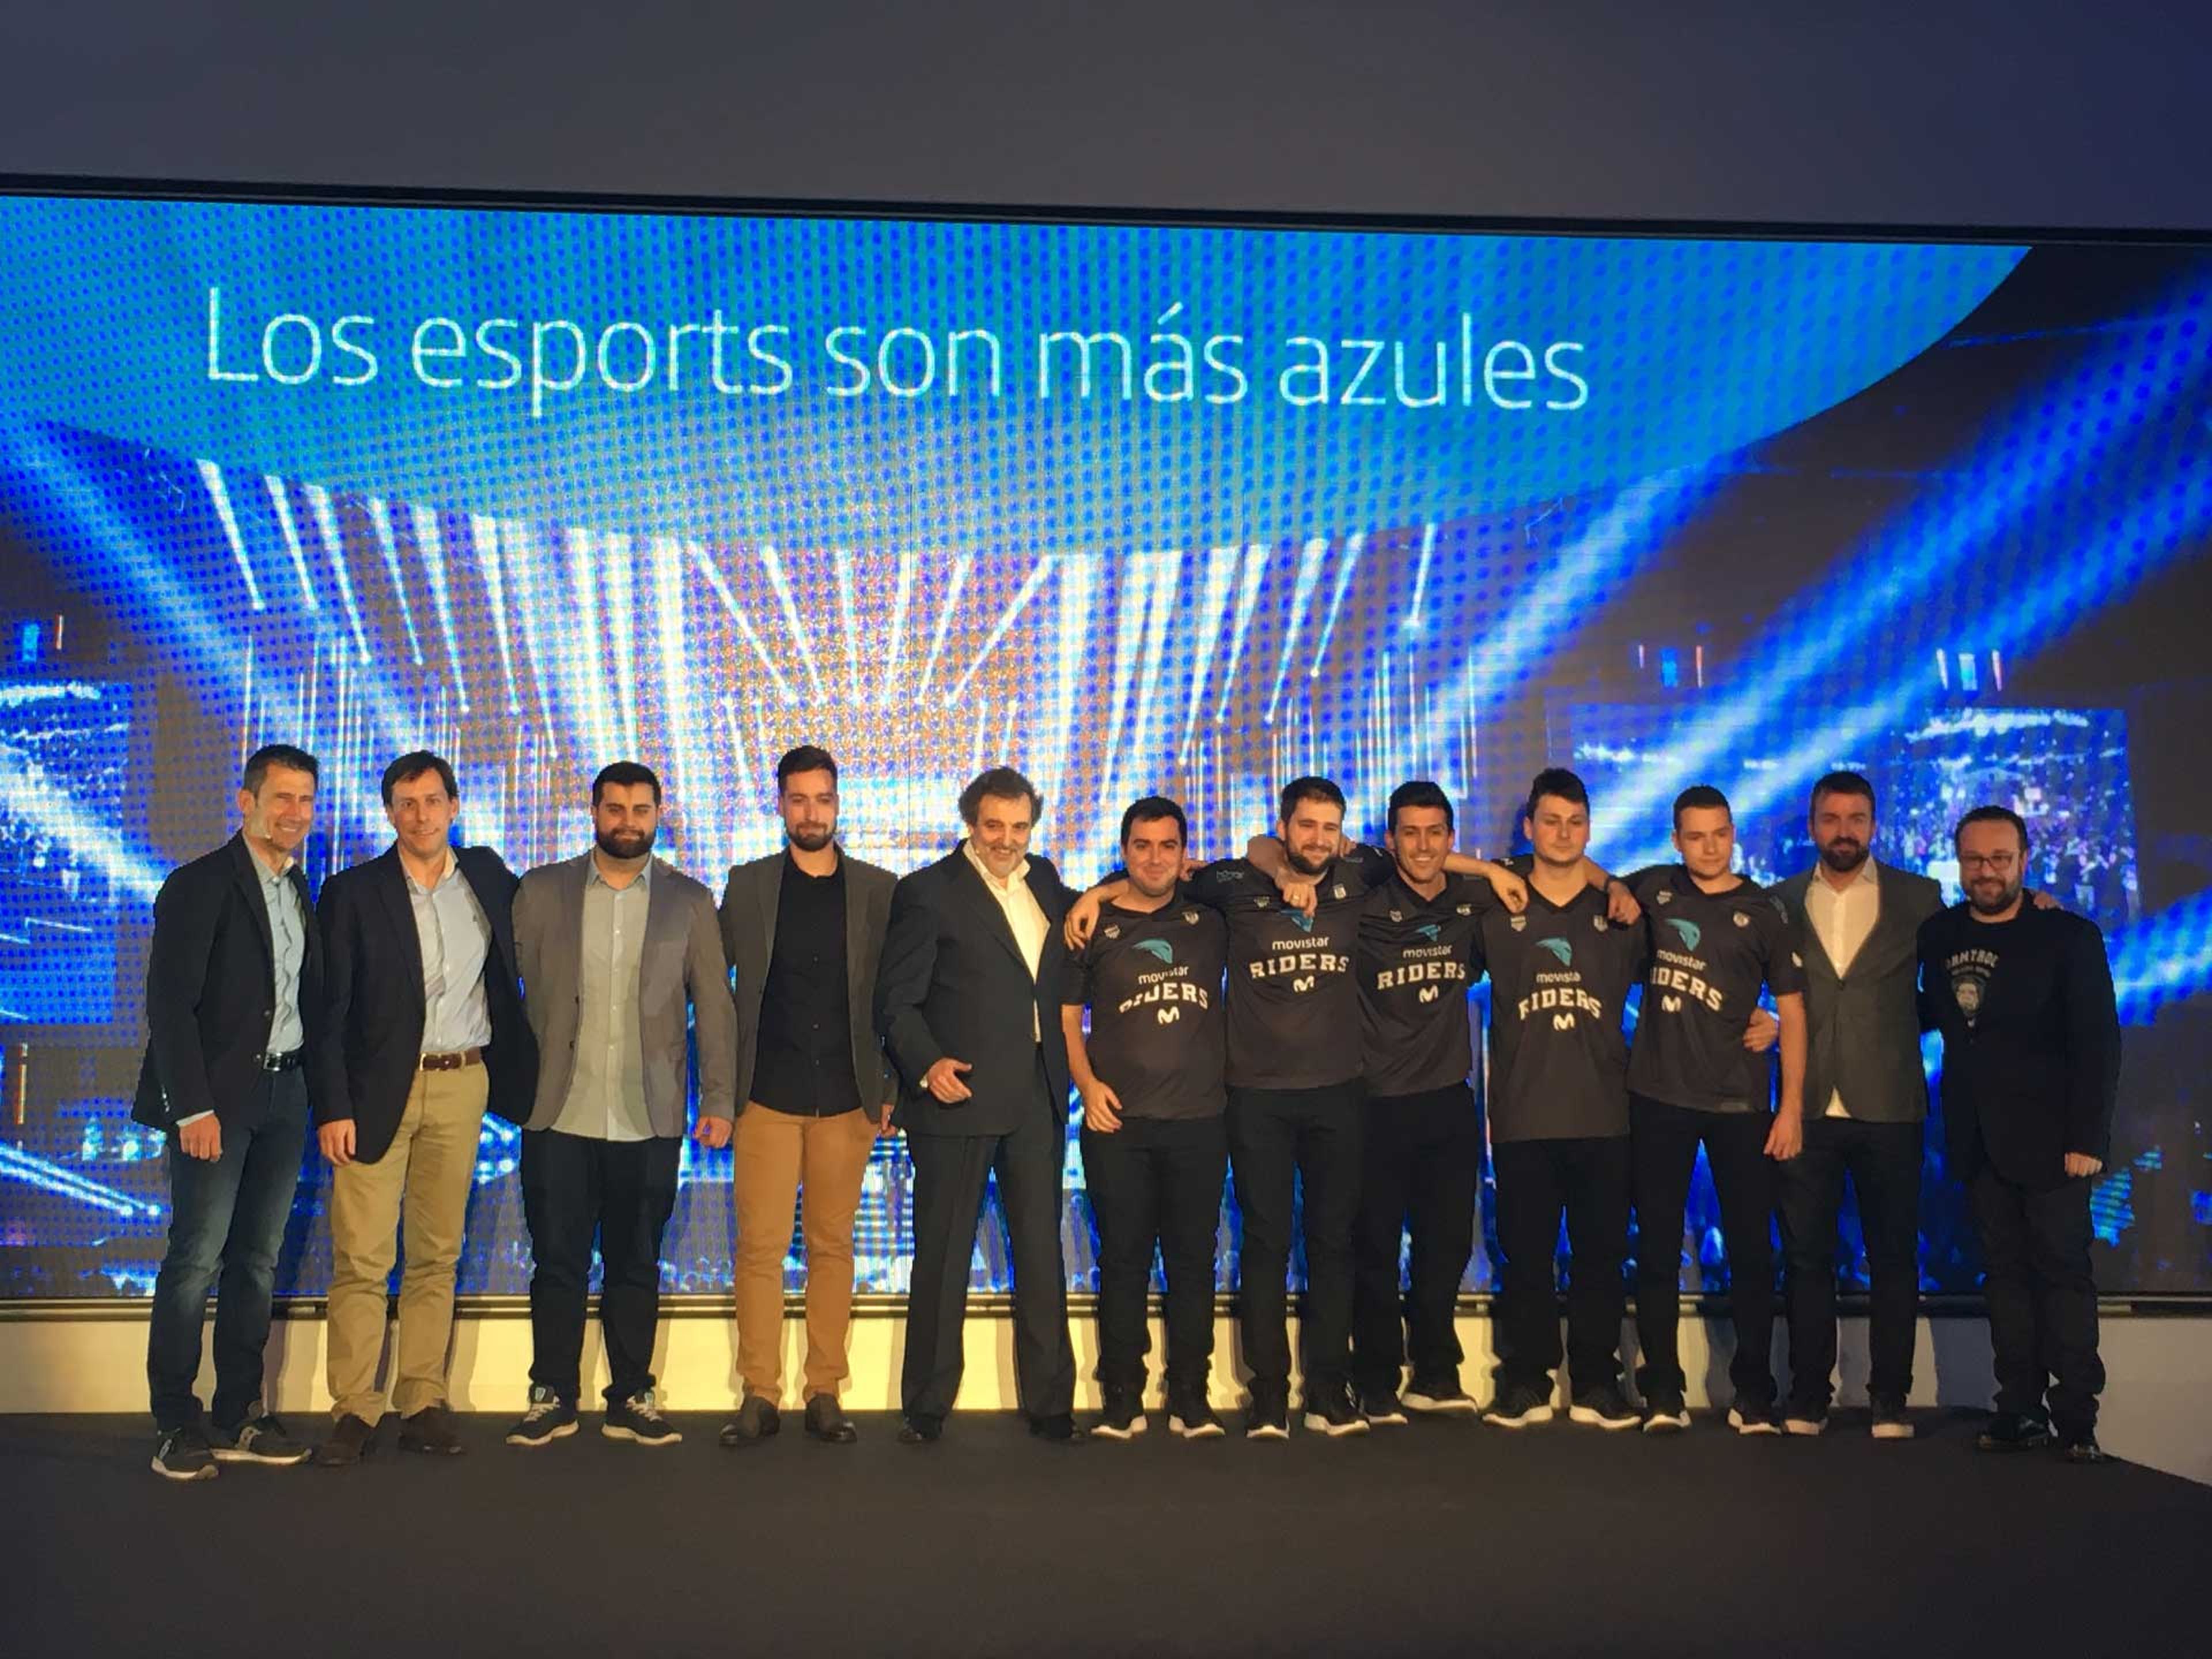 Representanres de ESL, de Movistar y del nuevo equipo Movistar Riders escenificando la unión entre deportes tradicionales y eSports.